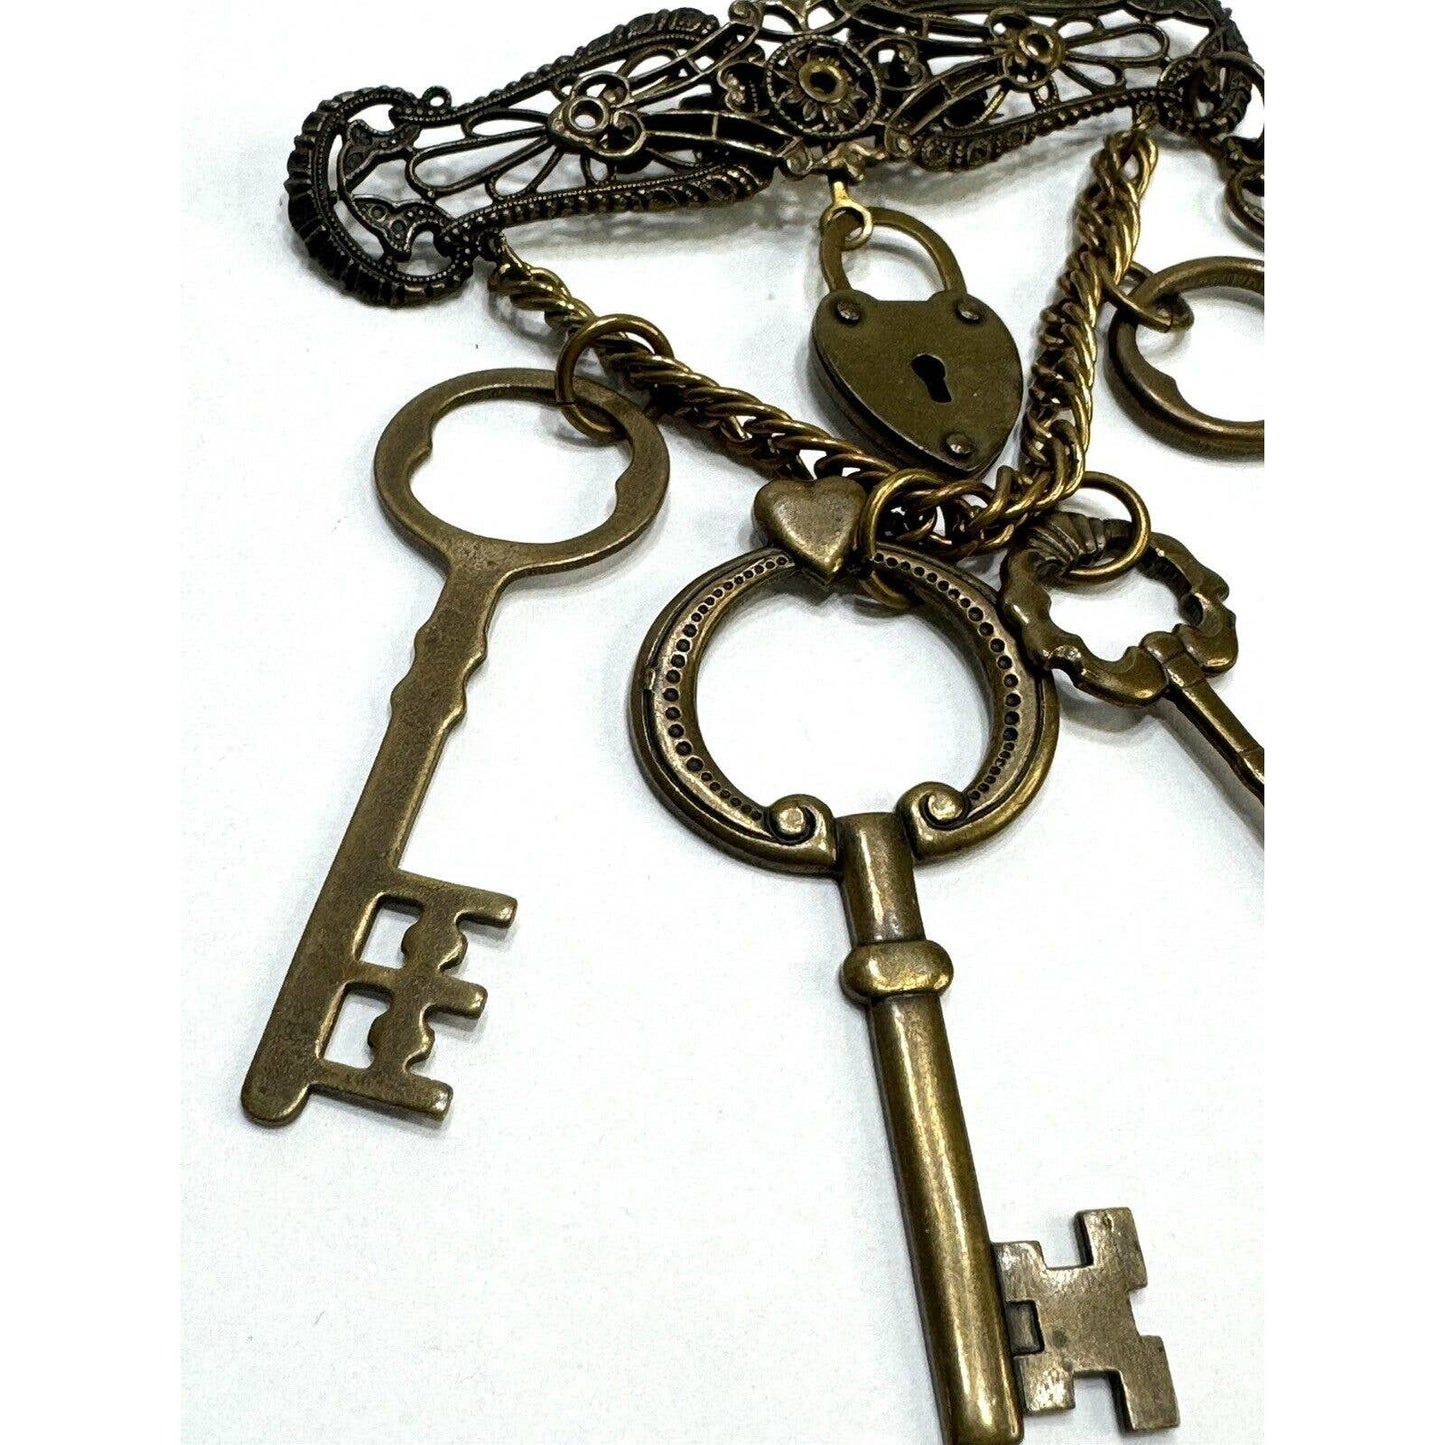 Jan MichaelsSteampunk Keys To My Heart Dangle Brooch Pin by Jan Michaels - Black Dog Vintage